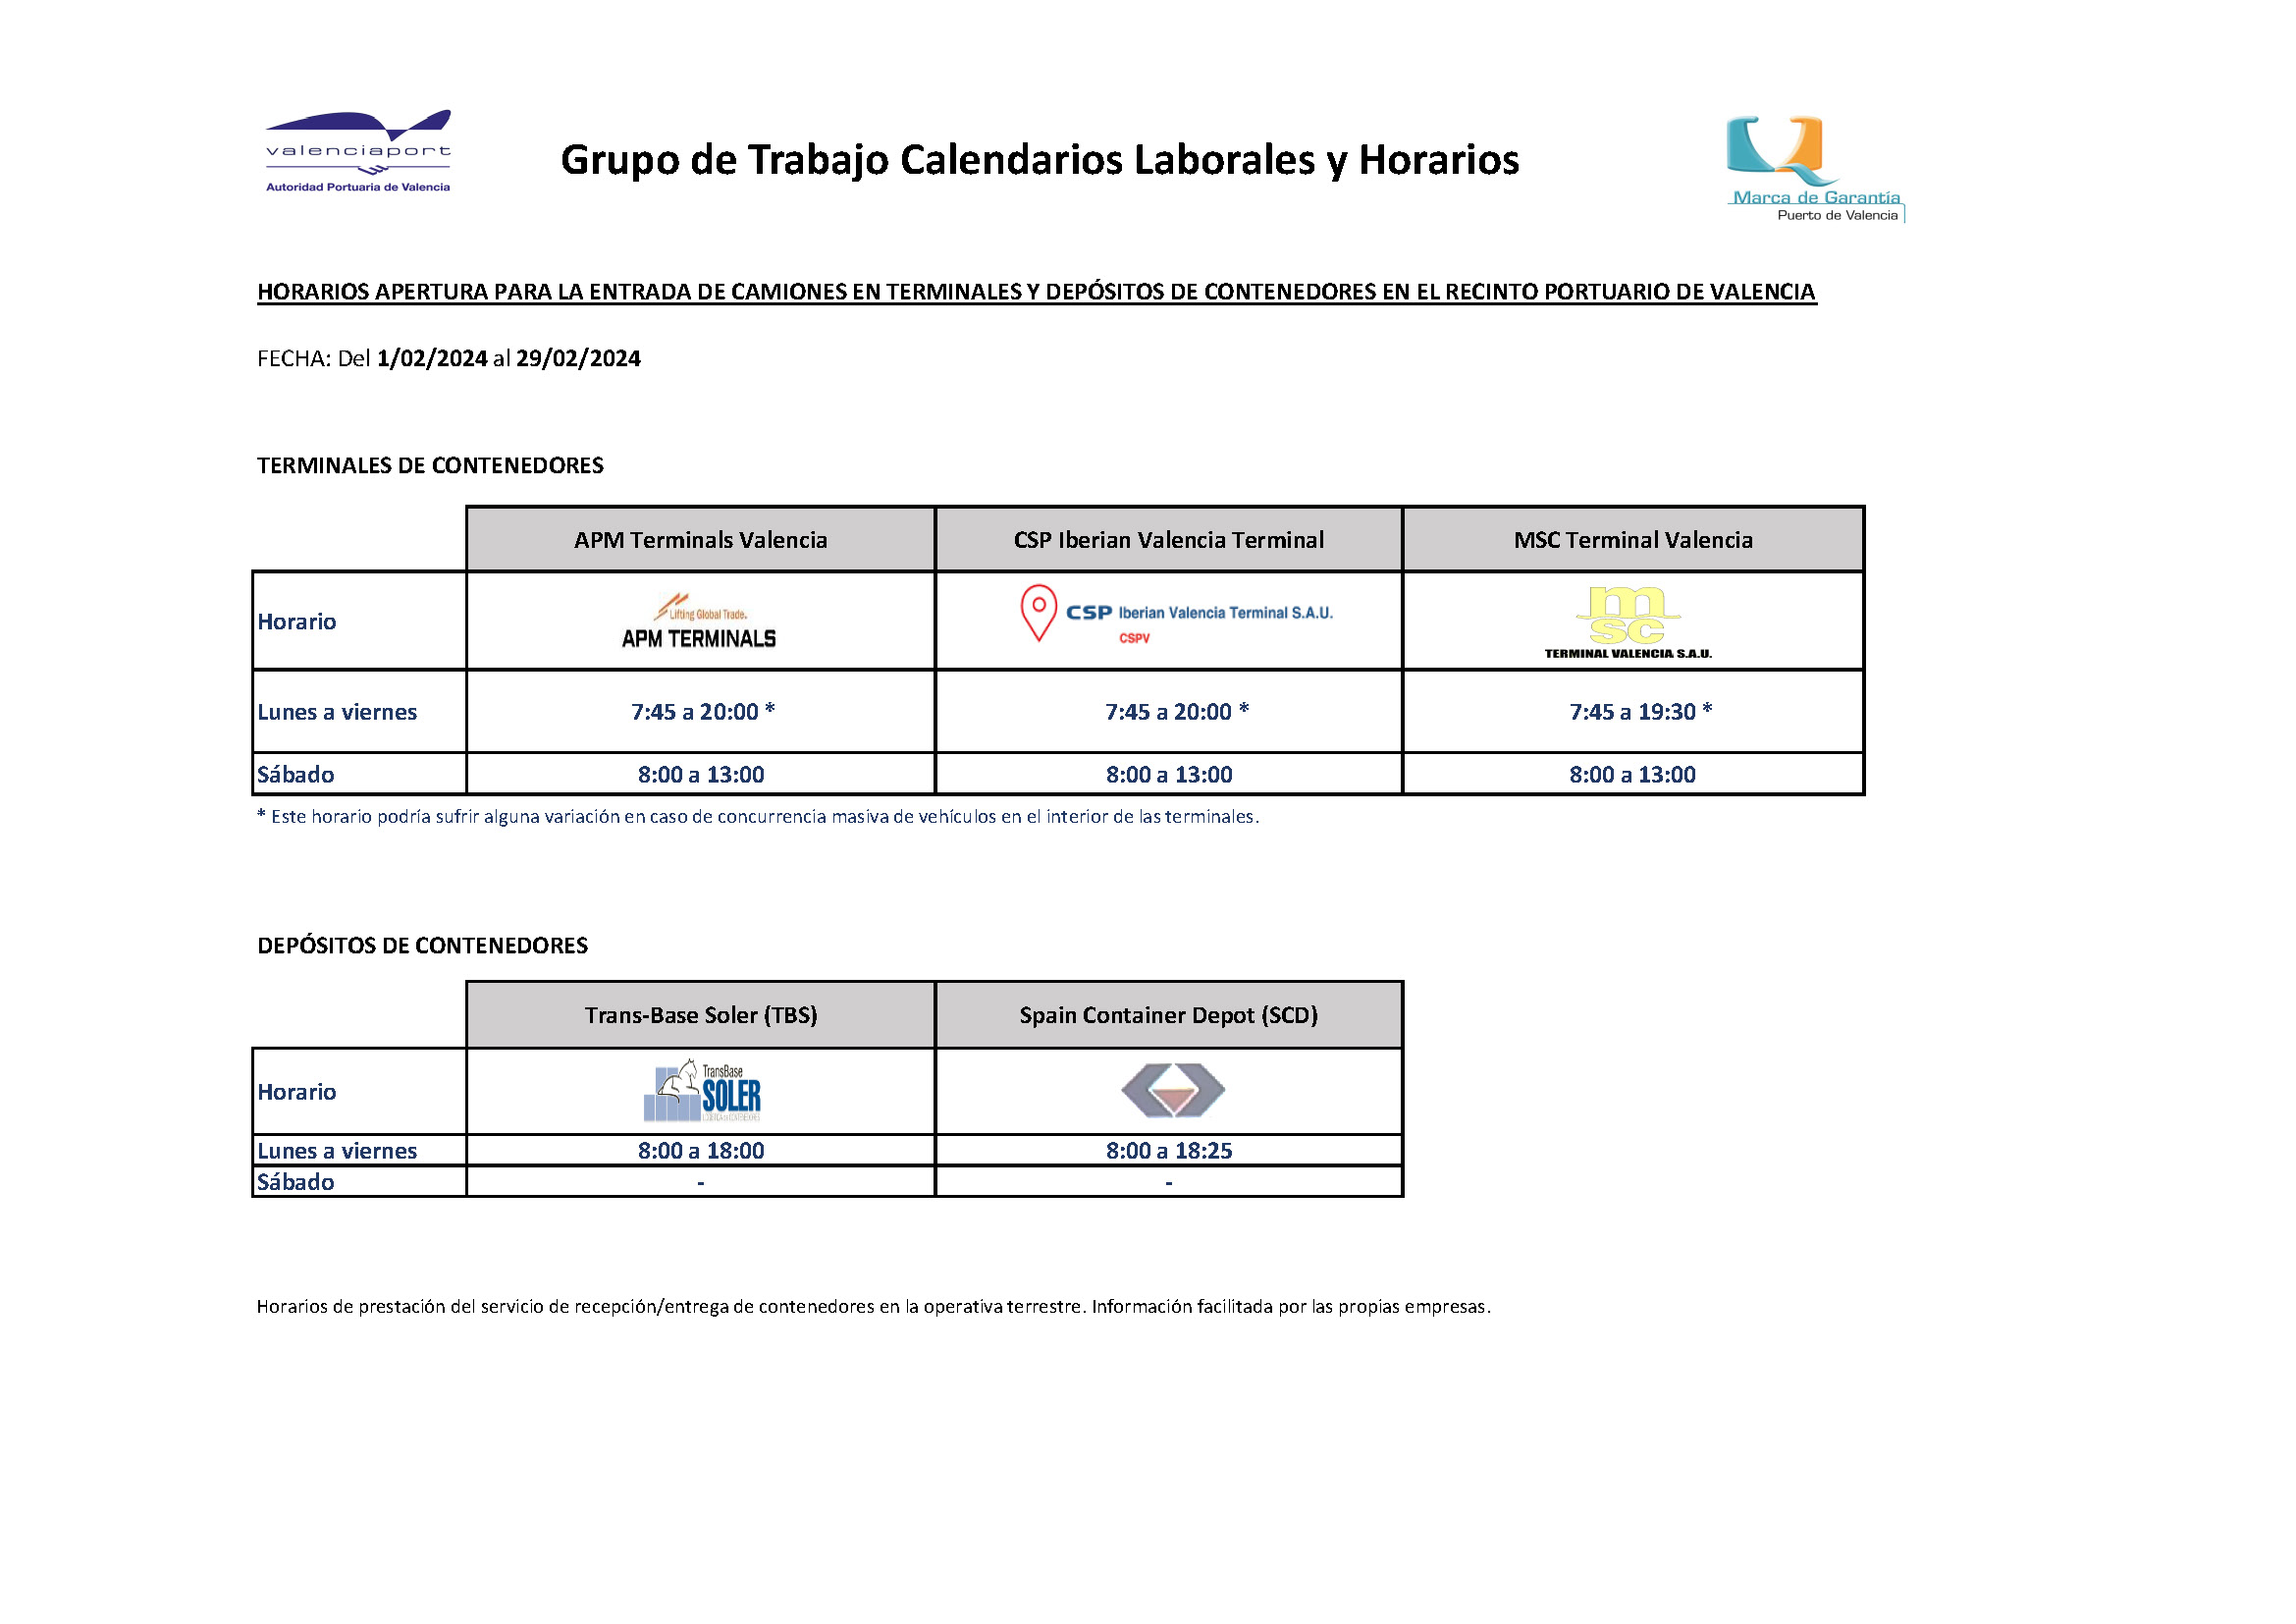 Horarios retirada/admisión en la operativa terrestre de terminales y depósitos de contenedores puerto de Valencia